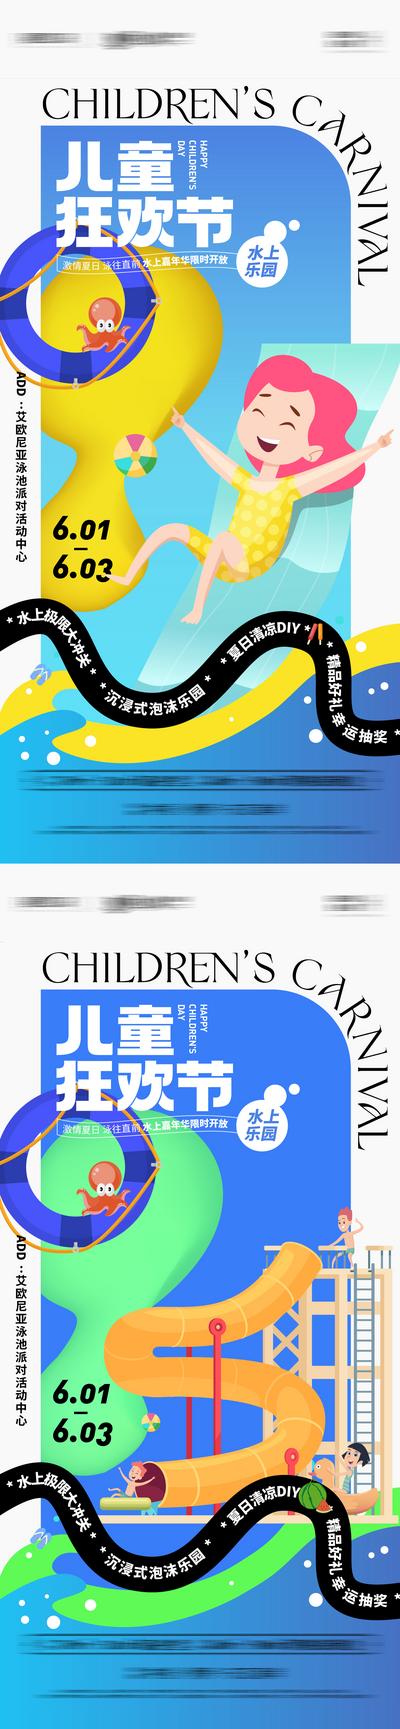 南门网 六一儿童节水上嘉年华活动系列海报